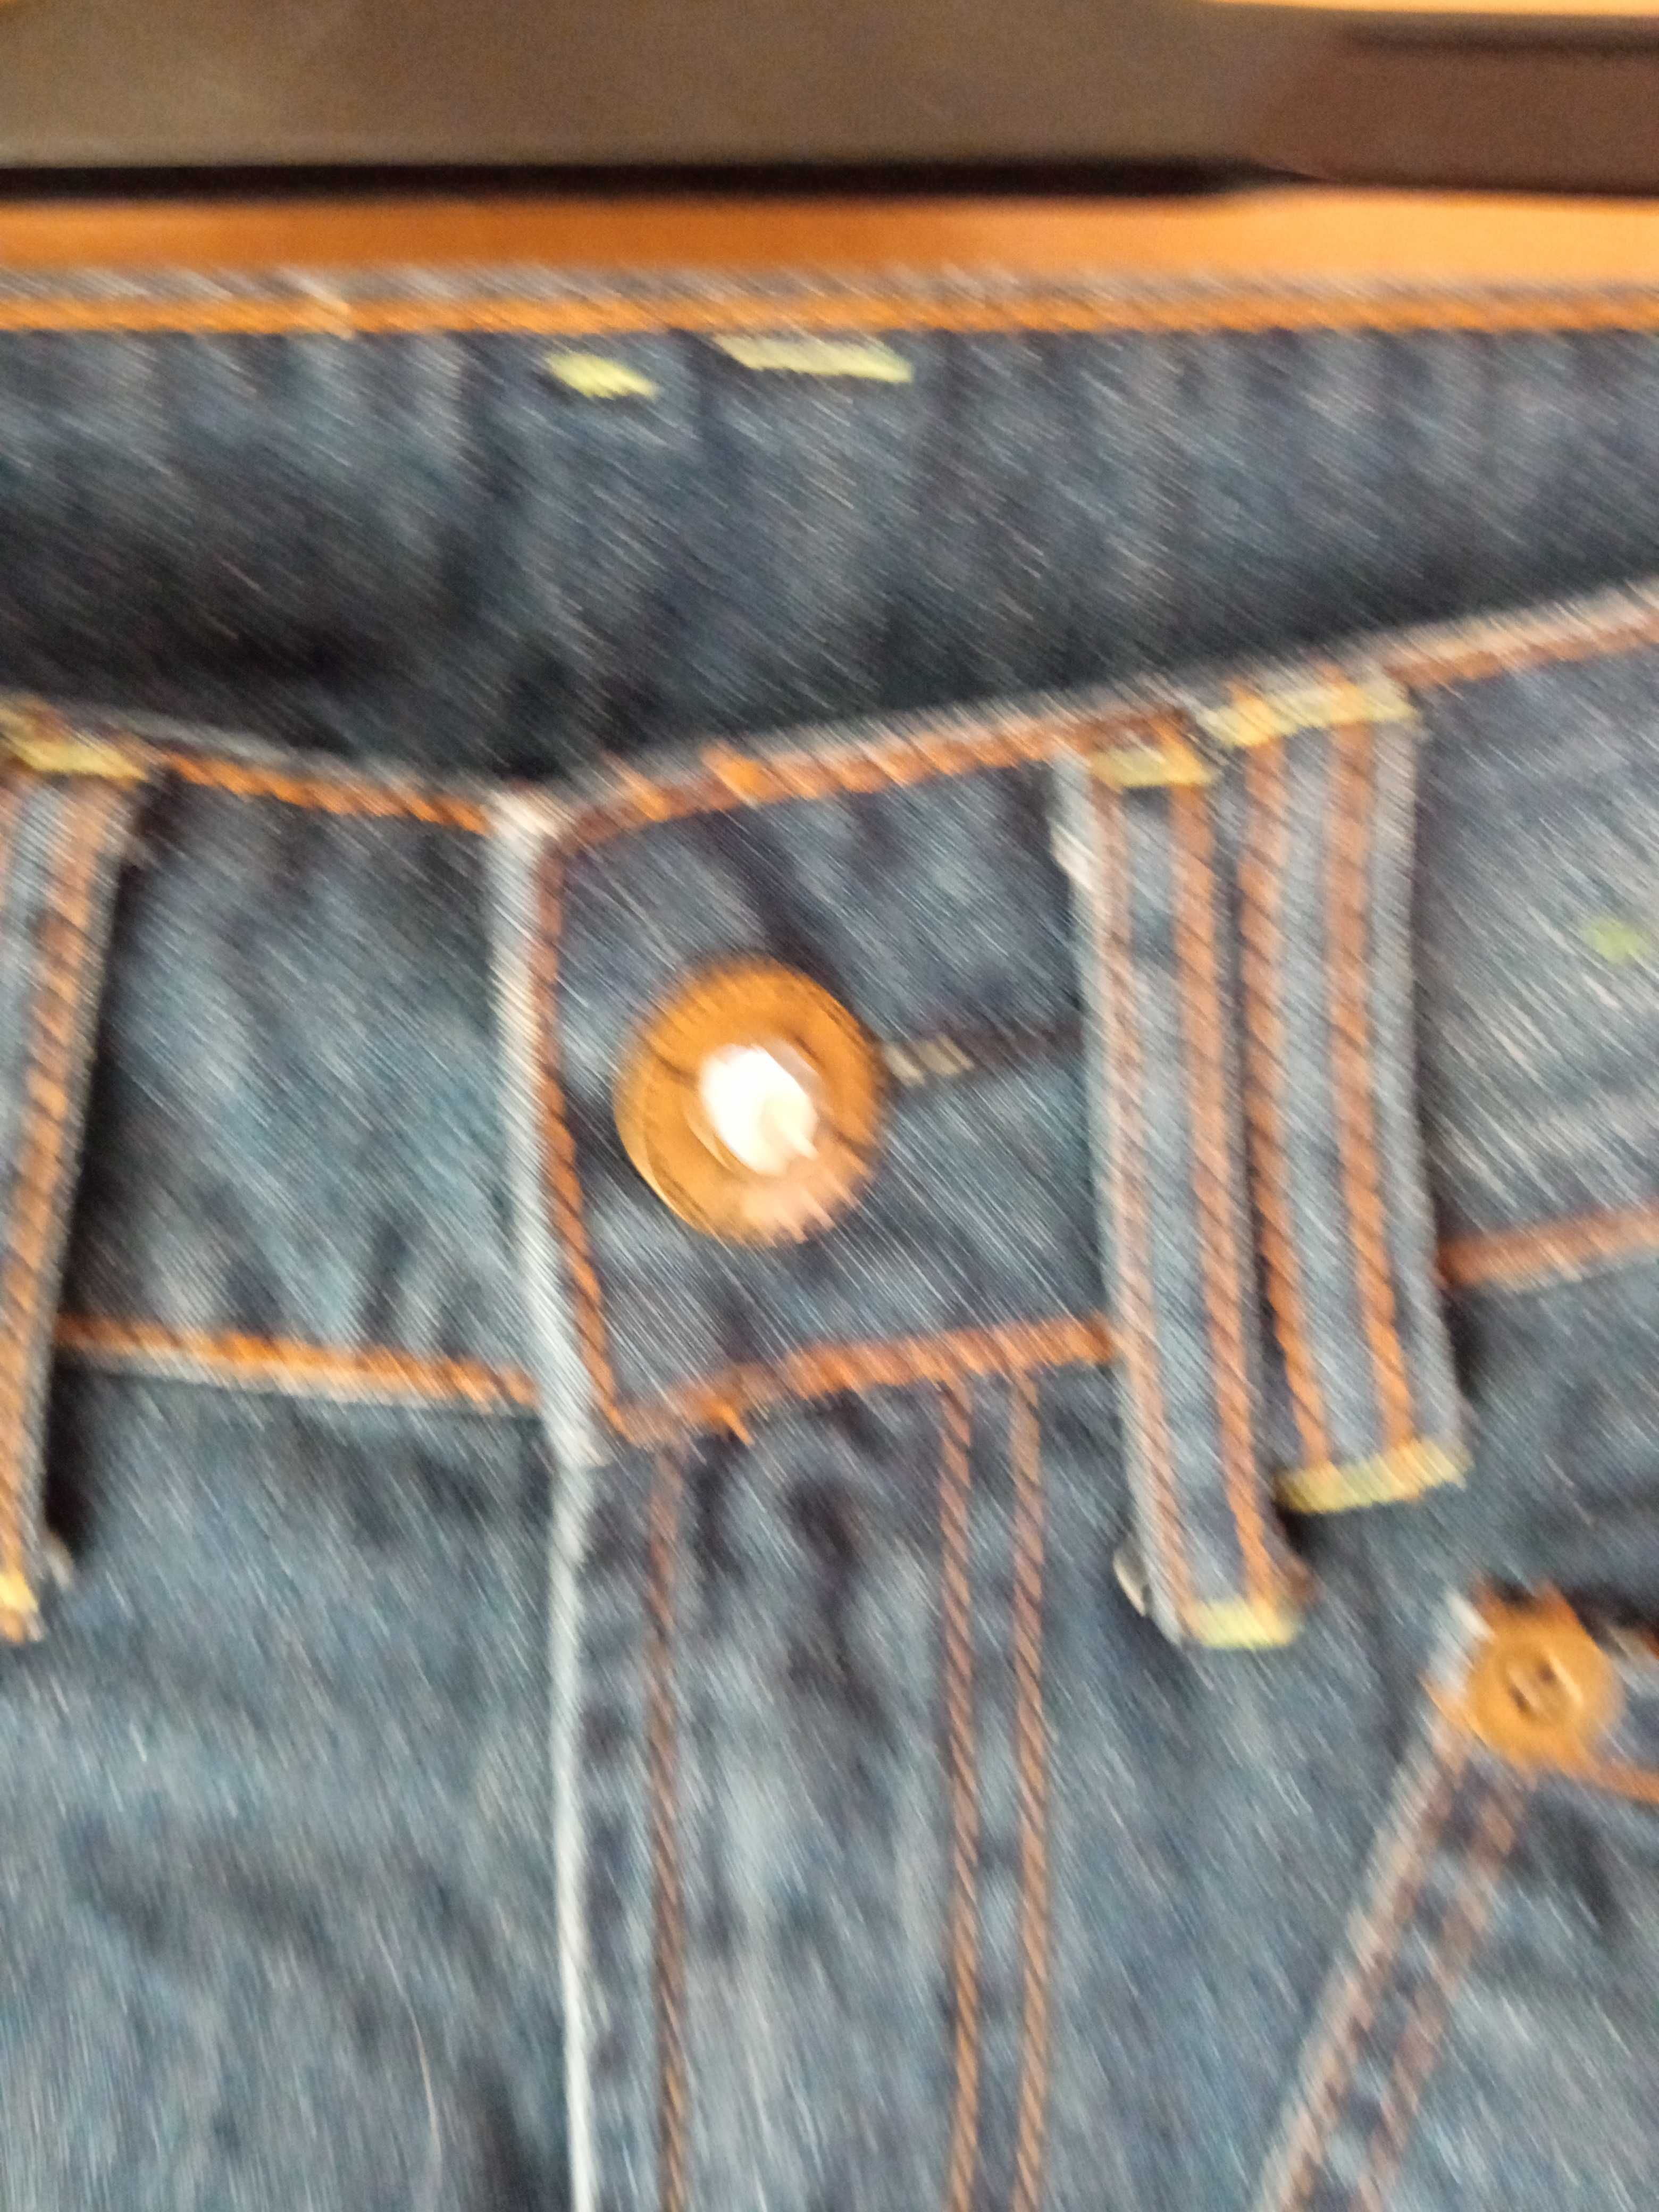 джинсовые шорты 8 (36 евро) размер,